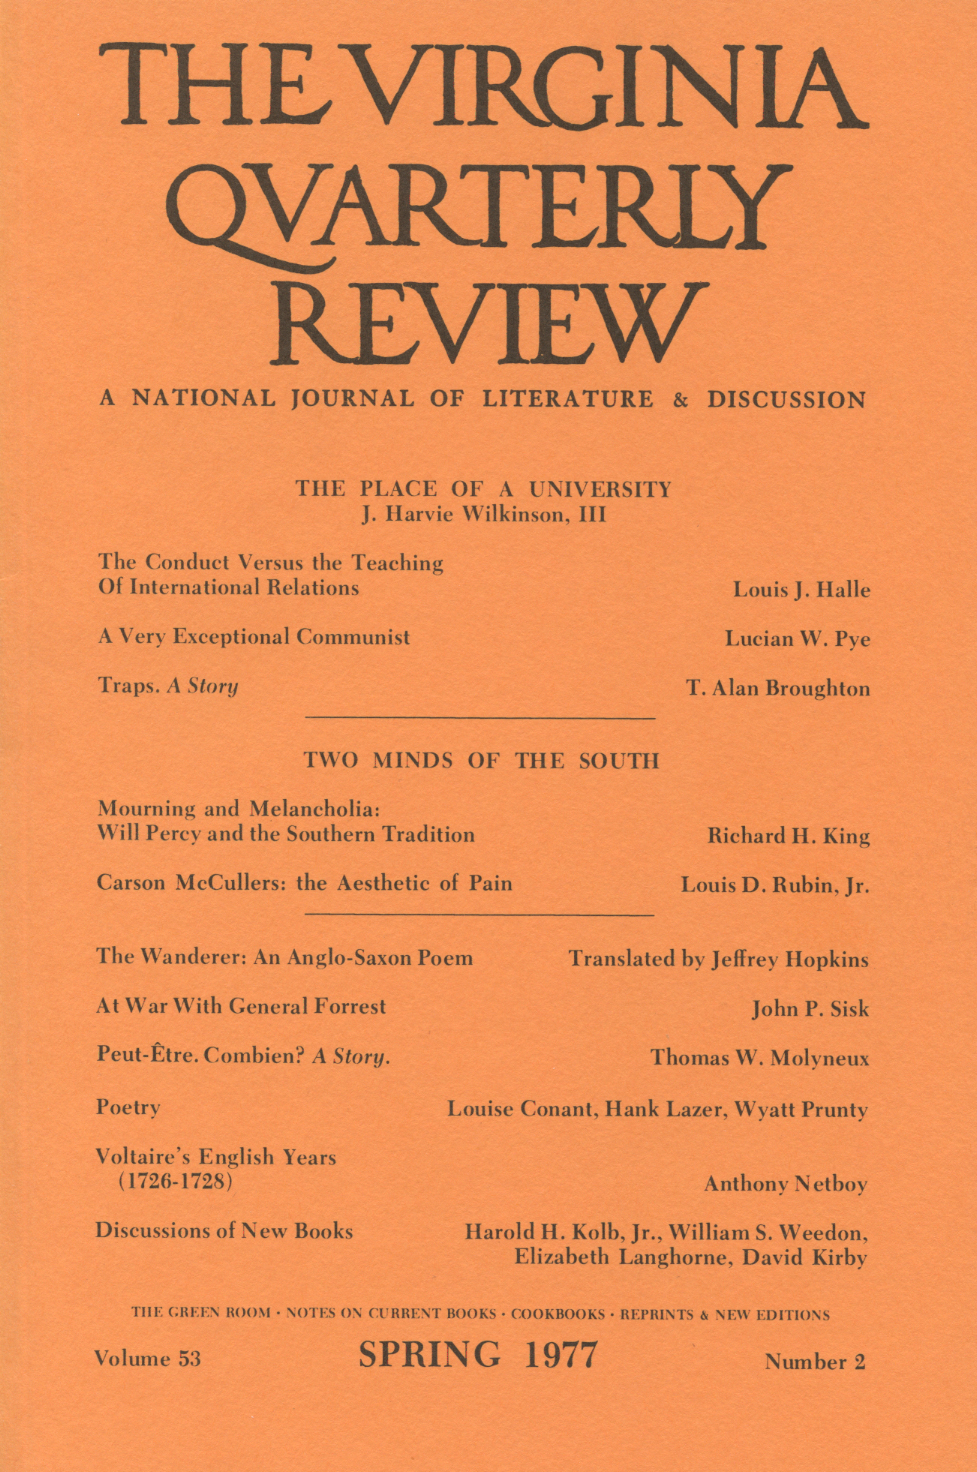 Virginia Quarterly Review, Spring 1977 cover